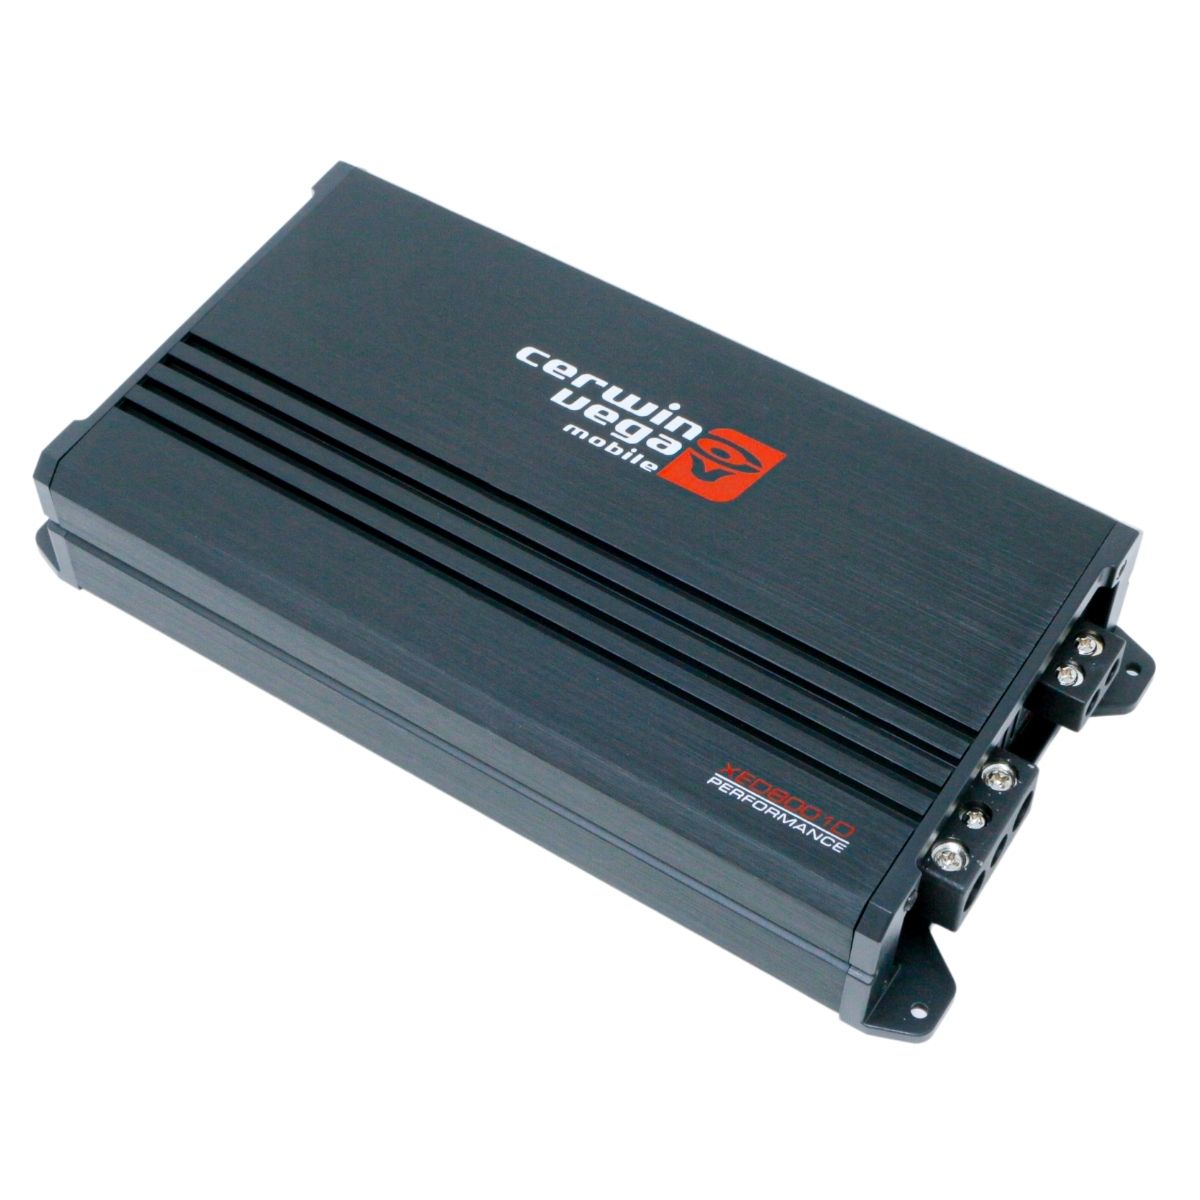 Cerwin Vega XED8001D 800W RMS Mono Amplifier